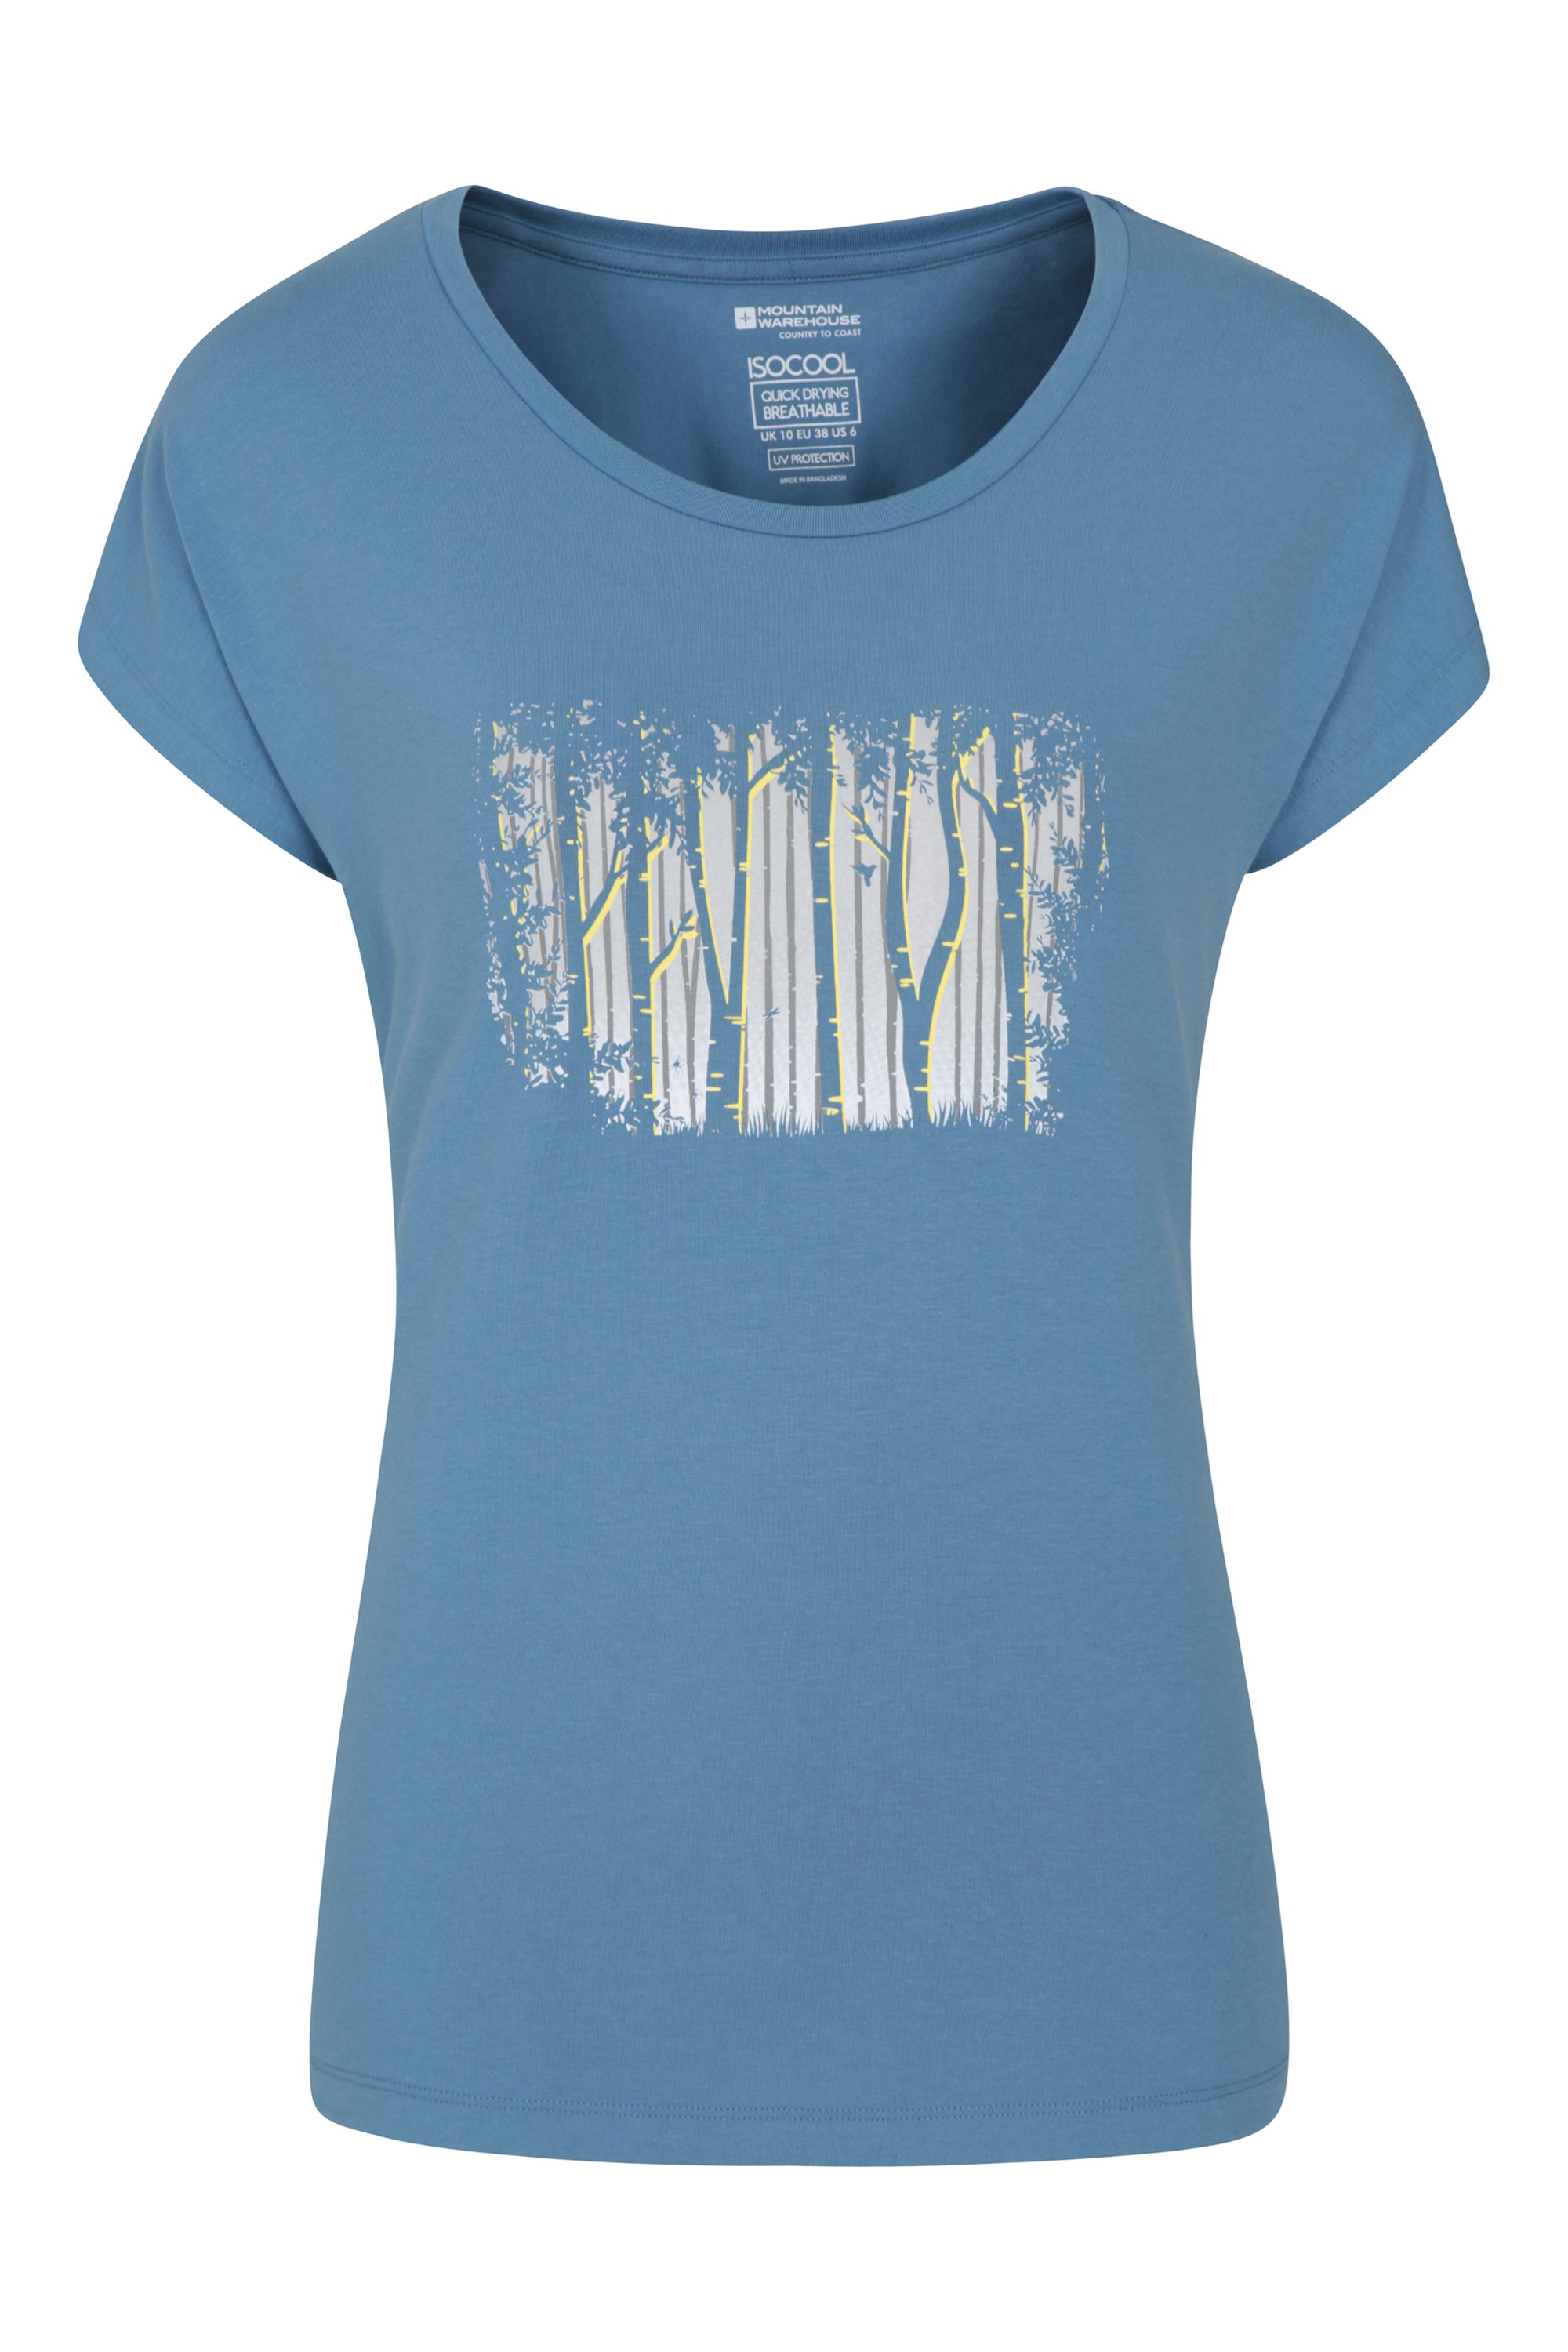 Tee-shirt femme avec motifs d'arbres - Bleu